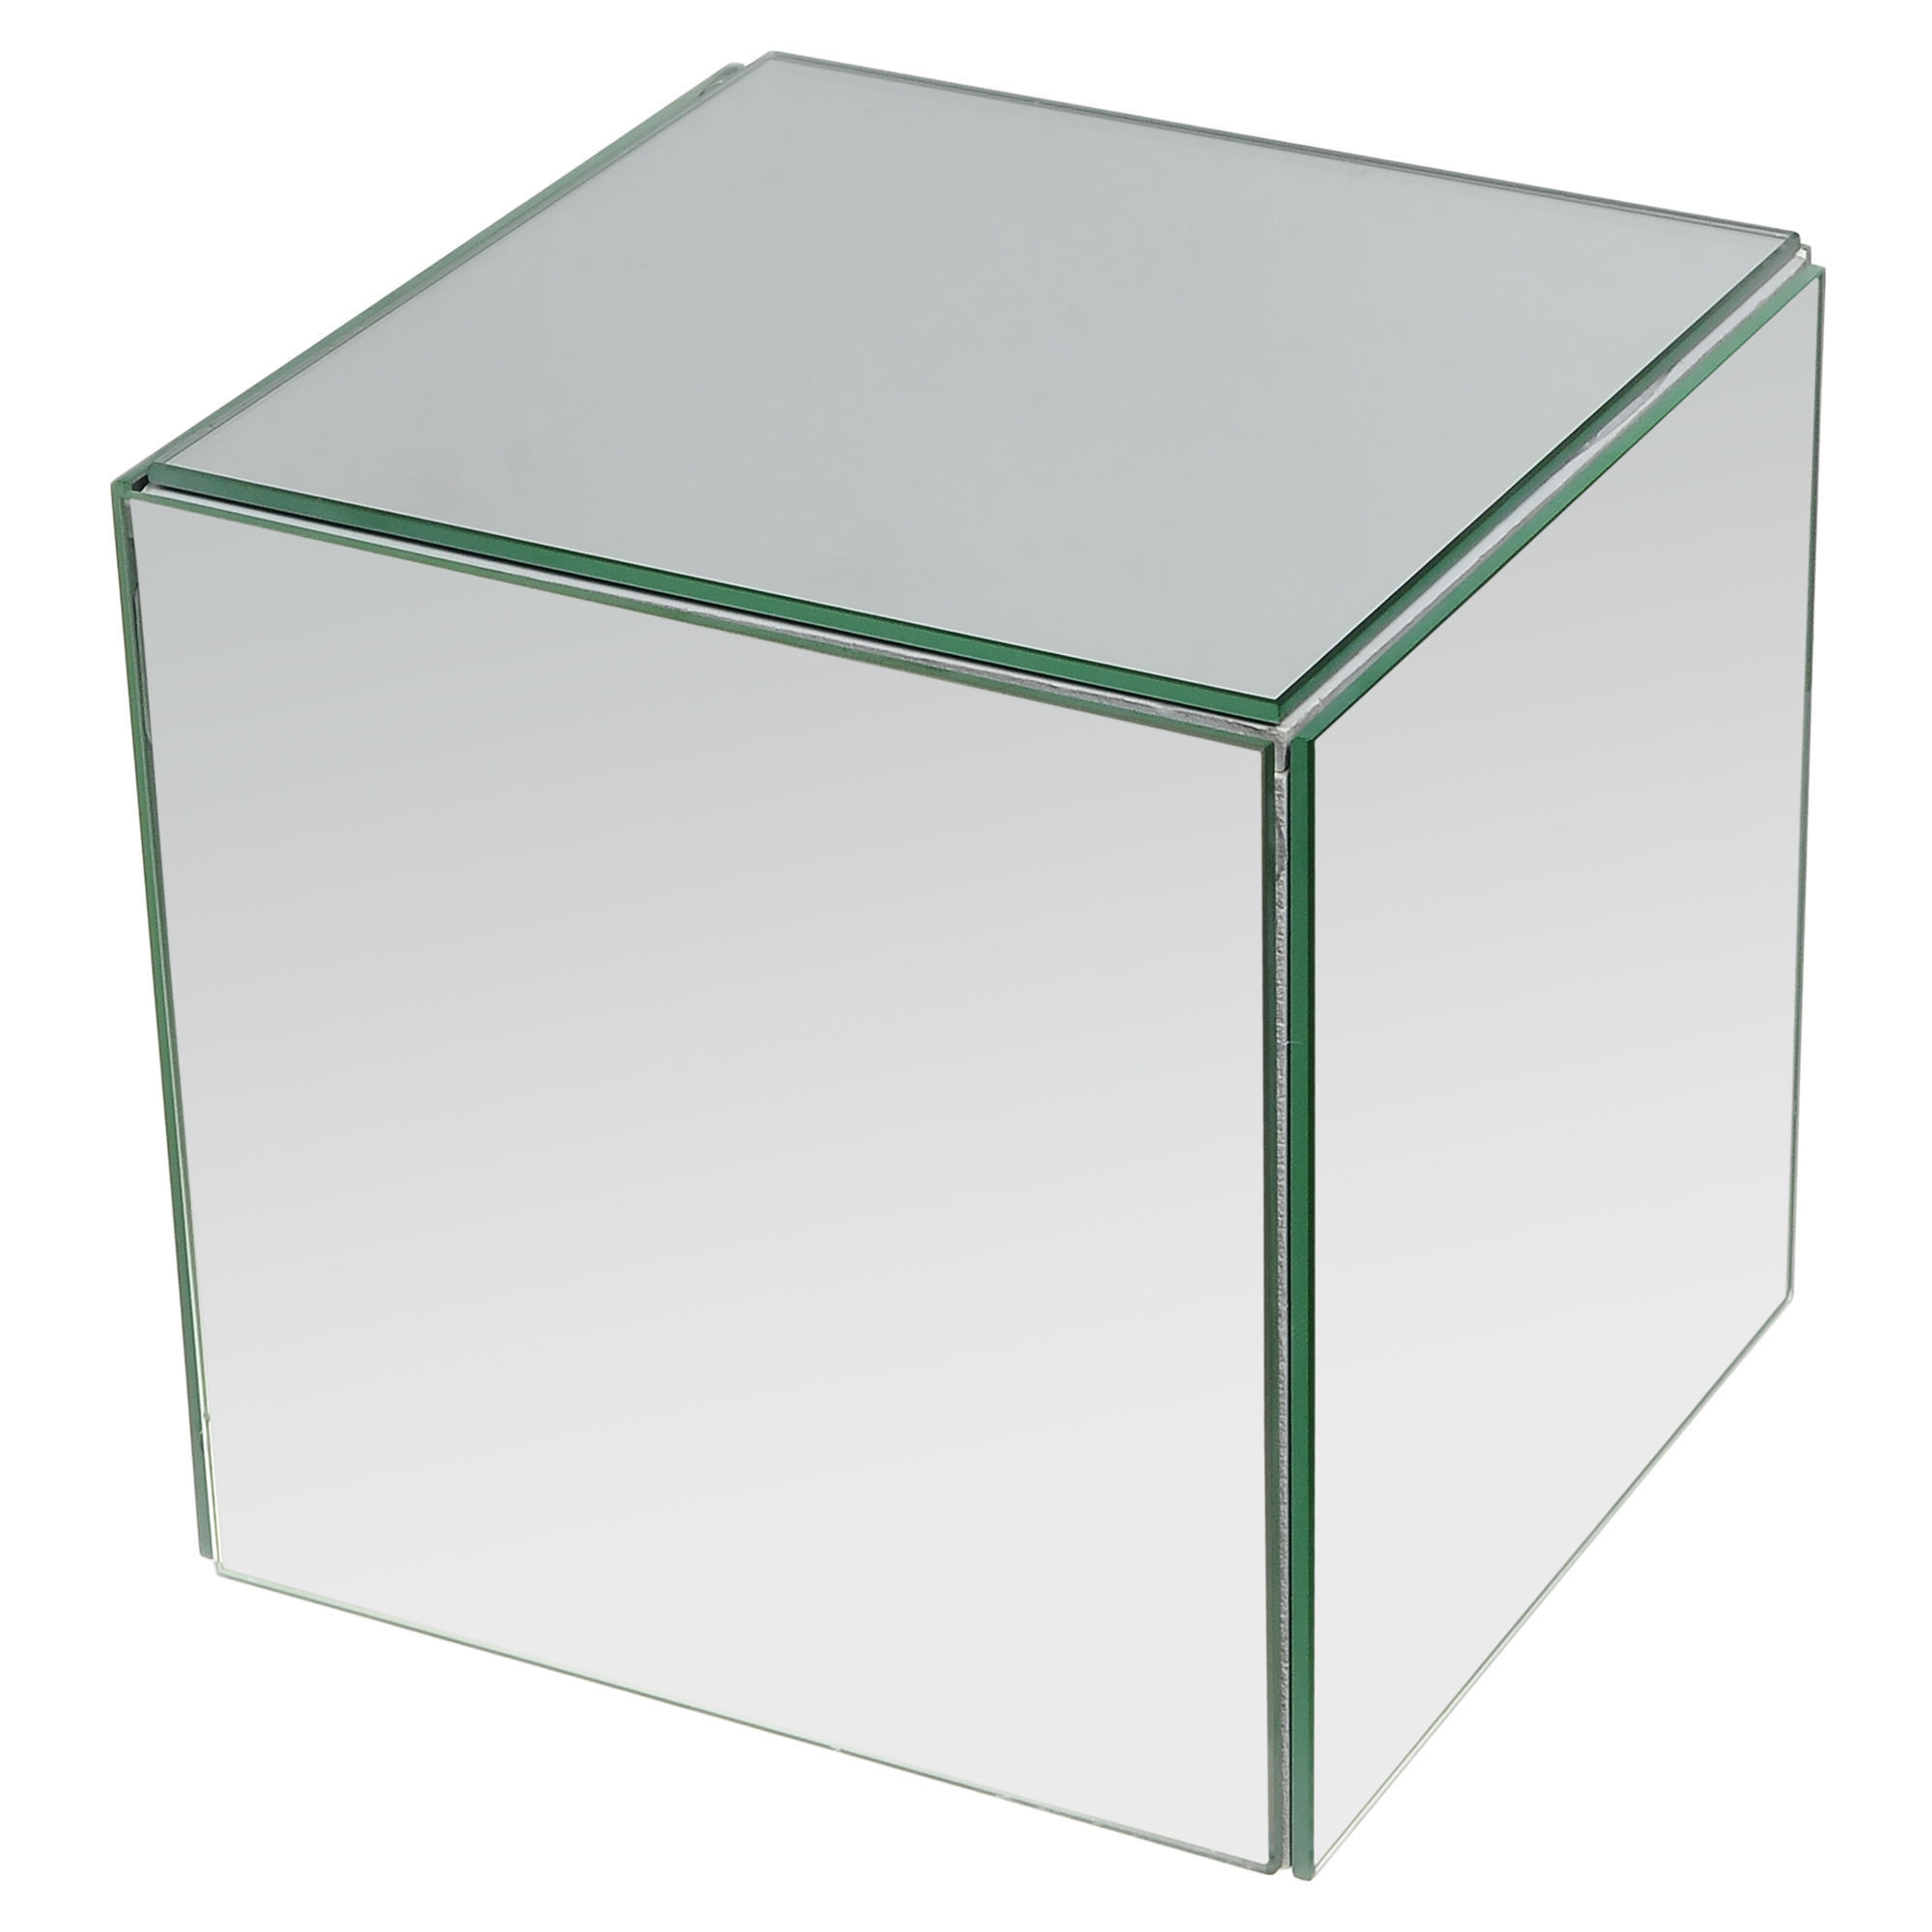 Reg kz. Зеркальный куб 3847. Антивандальный куб 1000х1000. Подставка куб. Зеркальные Кубы.